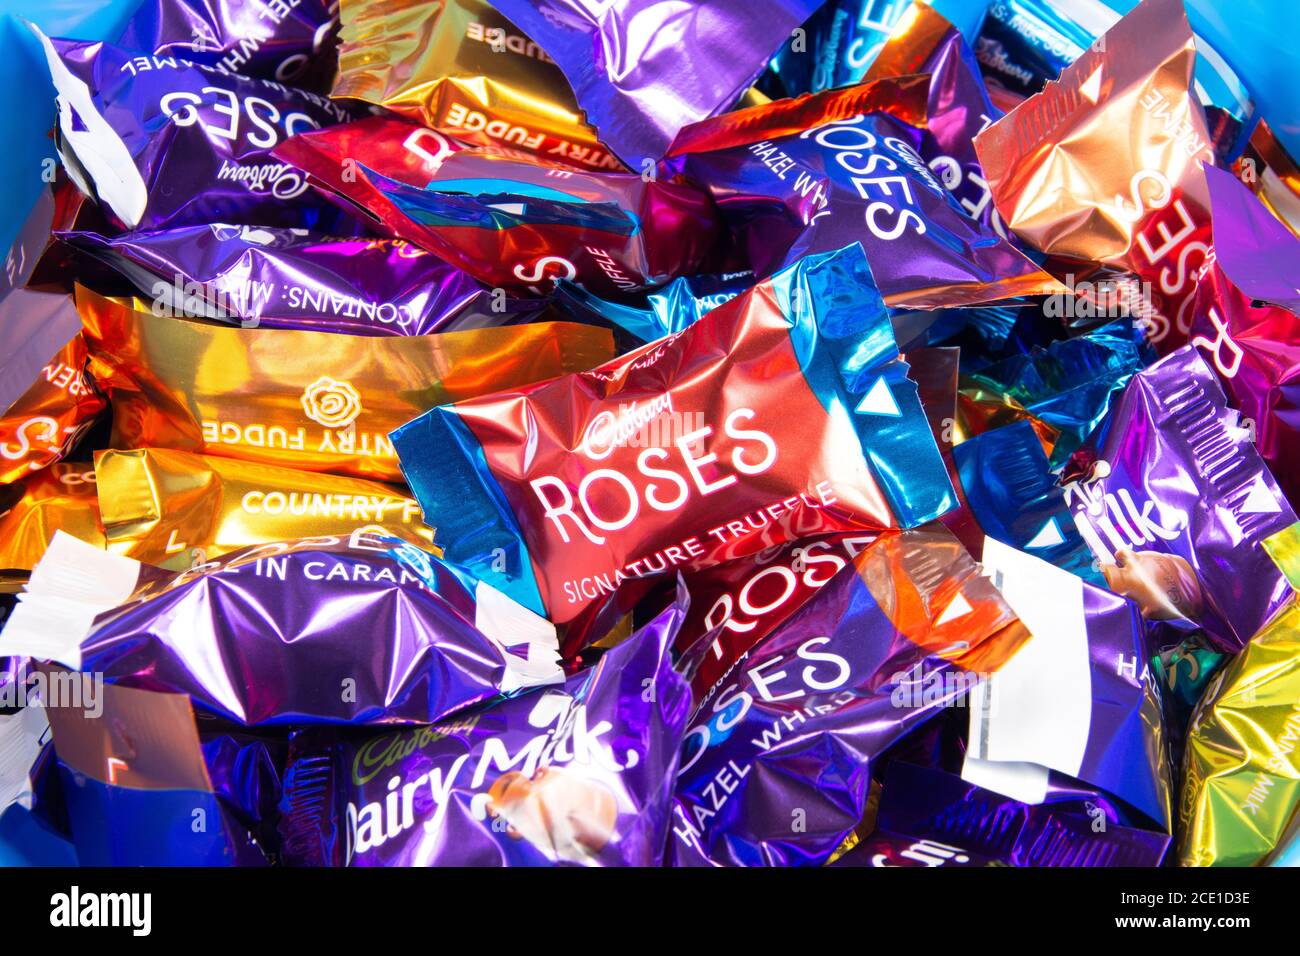 Selection of Cadbury Roses Chocolates, Leicestershire, England, United Kingdom Stock Photo